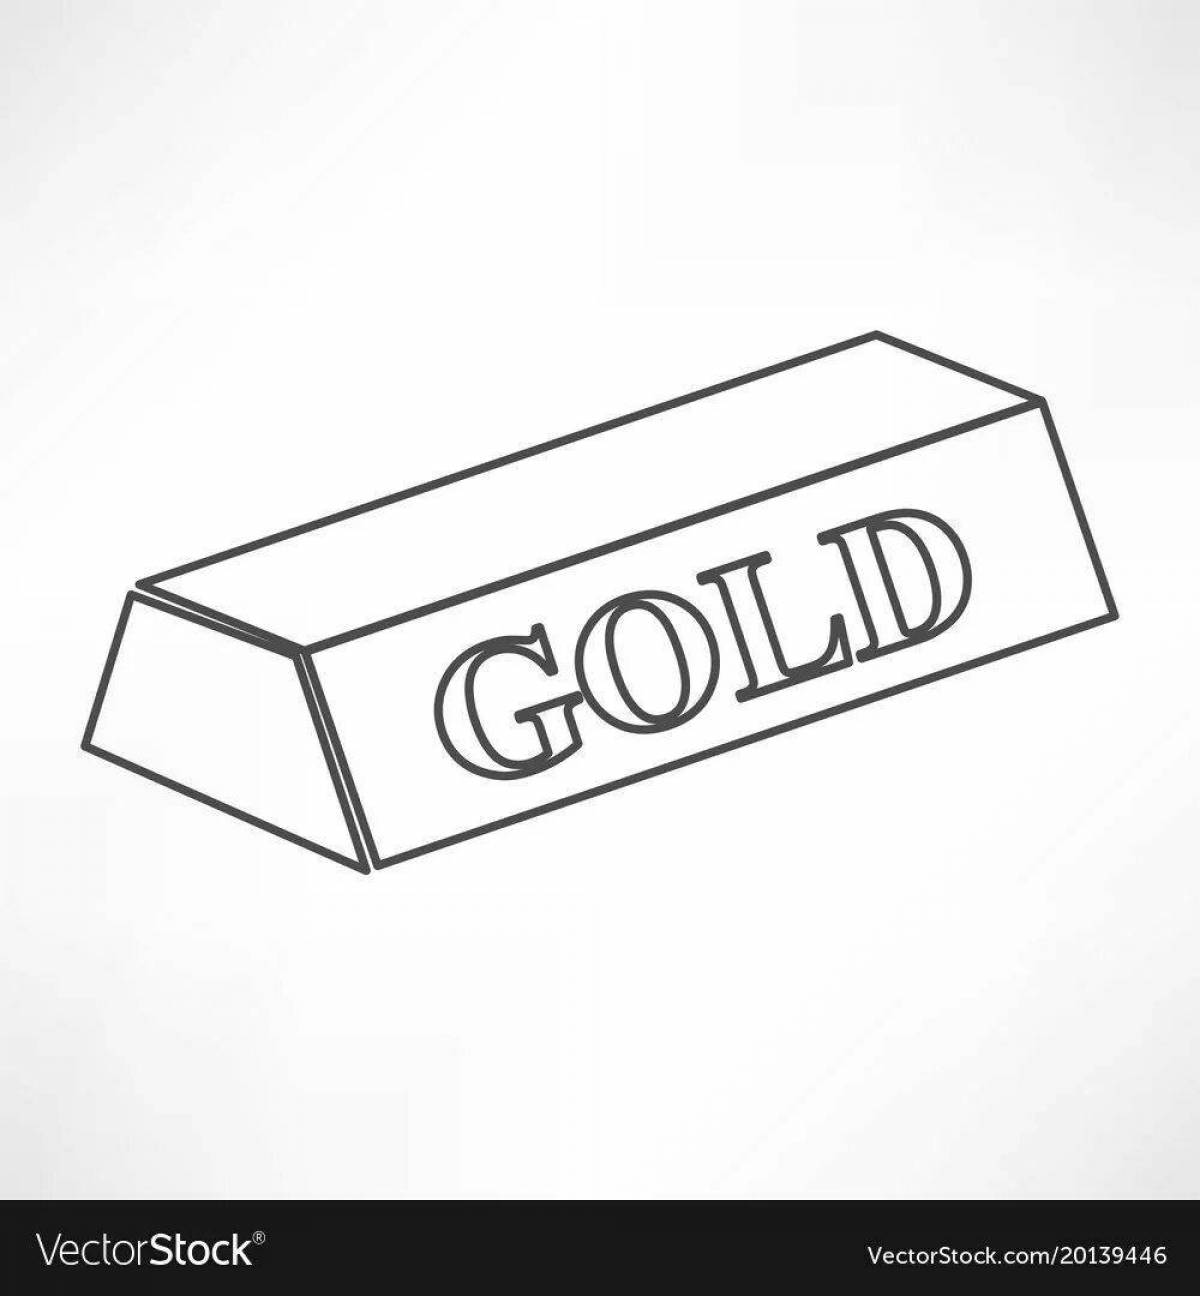 Gold bars #22